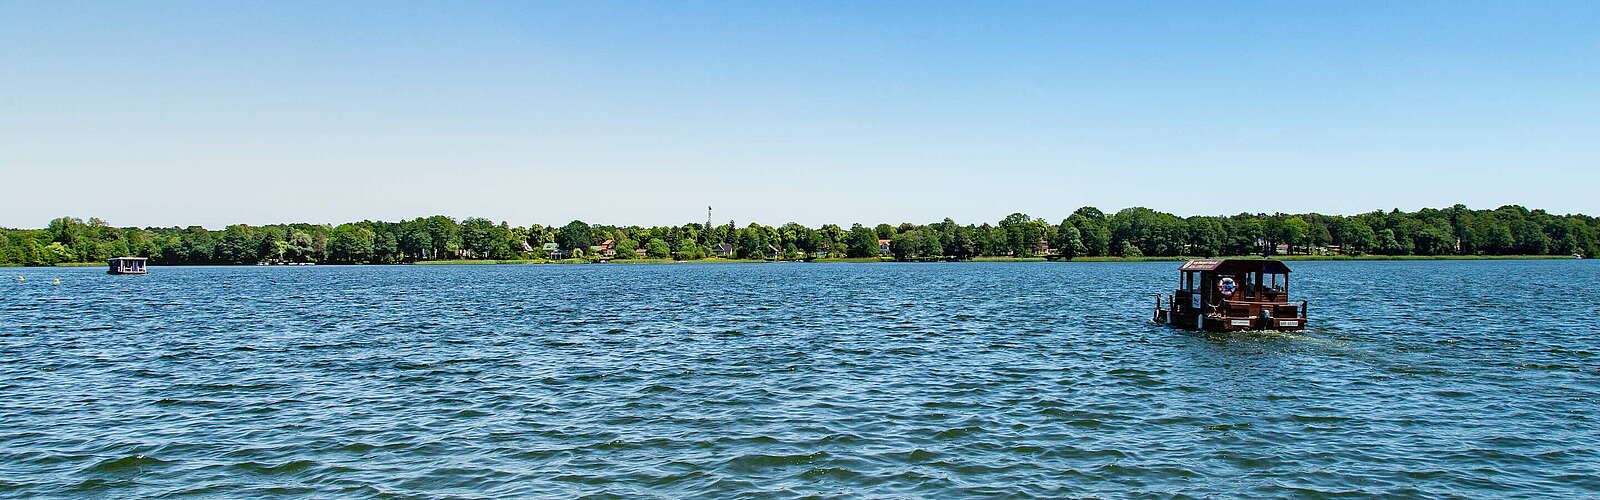 Mit dem Floß auf dem Ruppiner See,
        
    

        Foto: TMB- Fotoarchiv/Steffen Lehmann